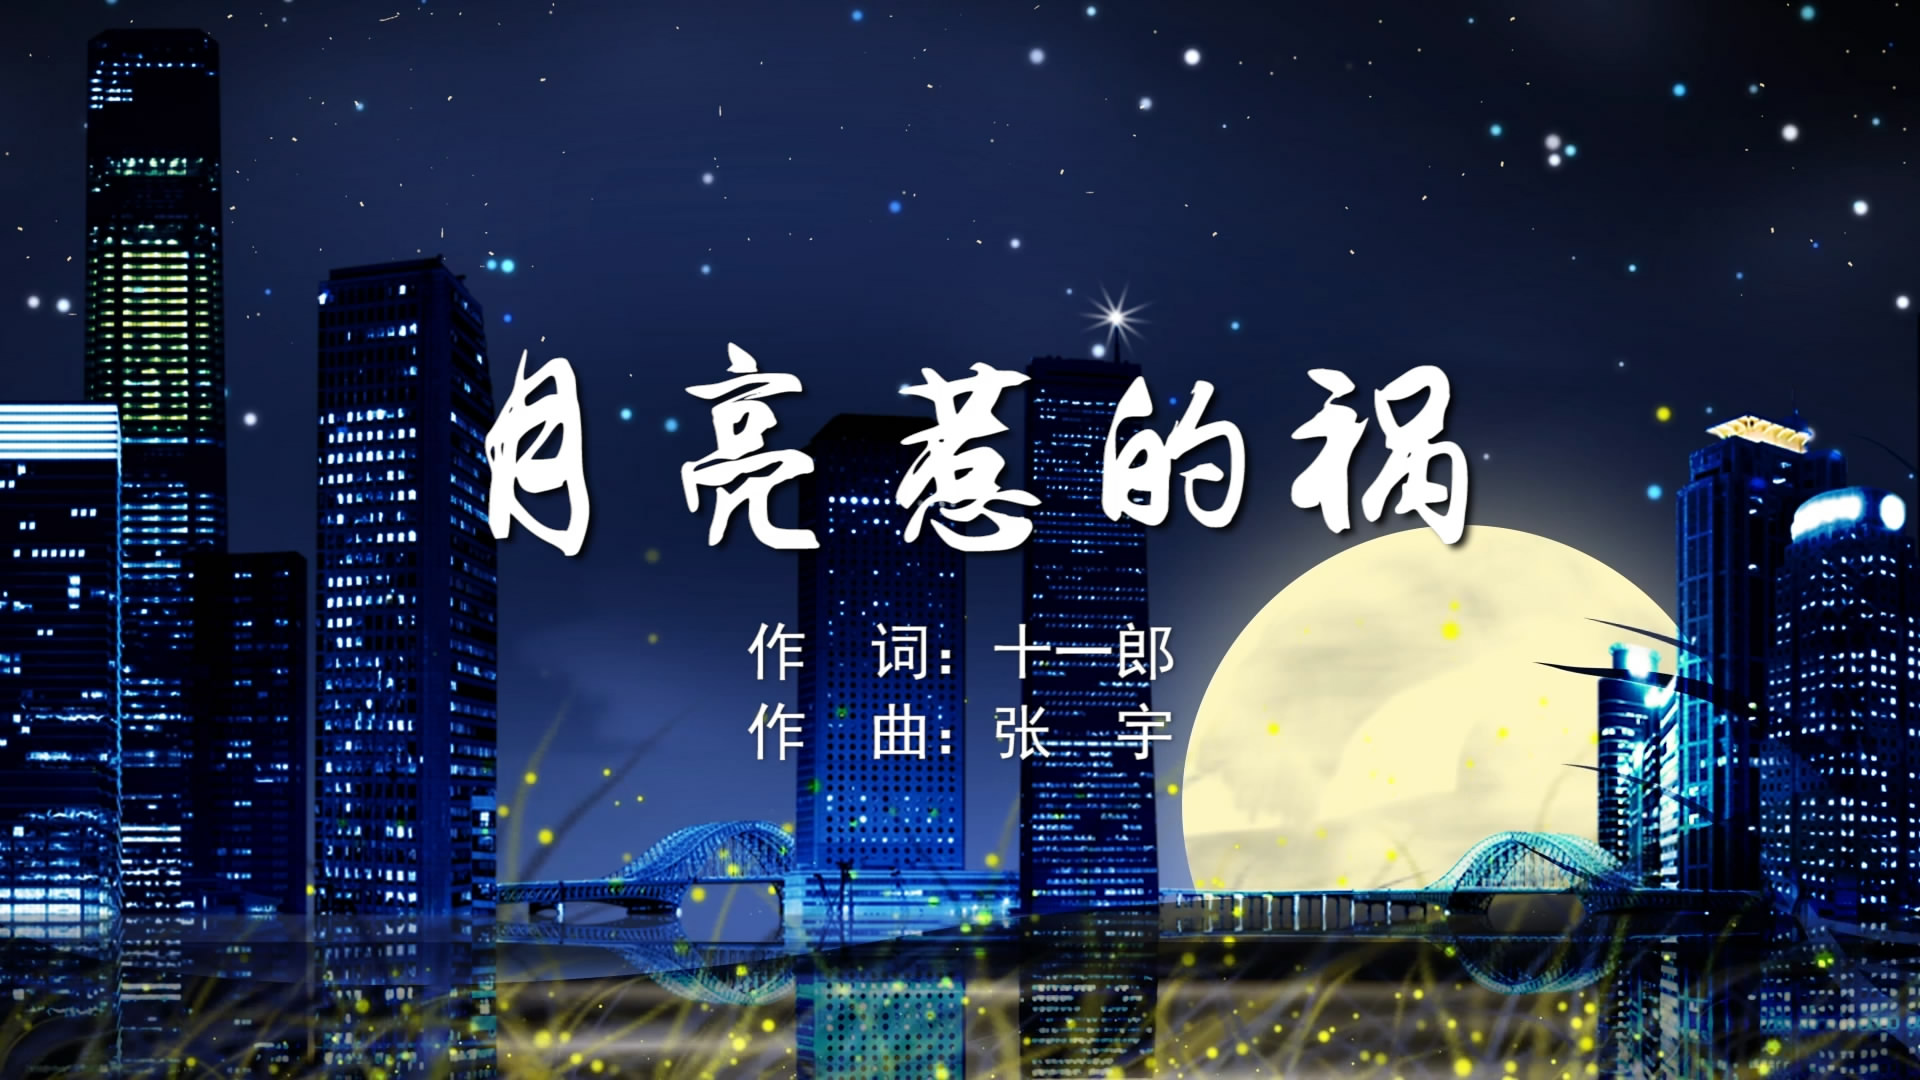 月亮惹的祸 张宇MV字幕配乐伴奏舞台演出LED背景